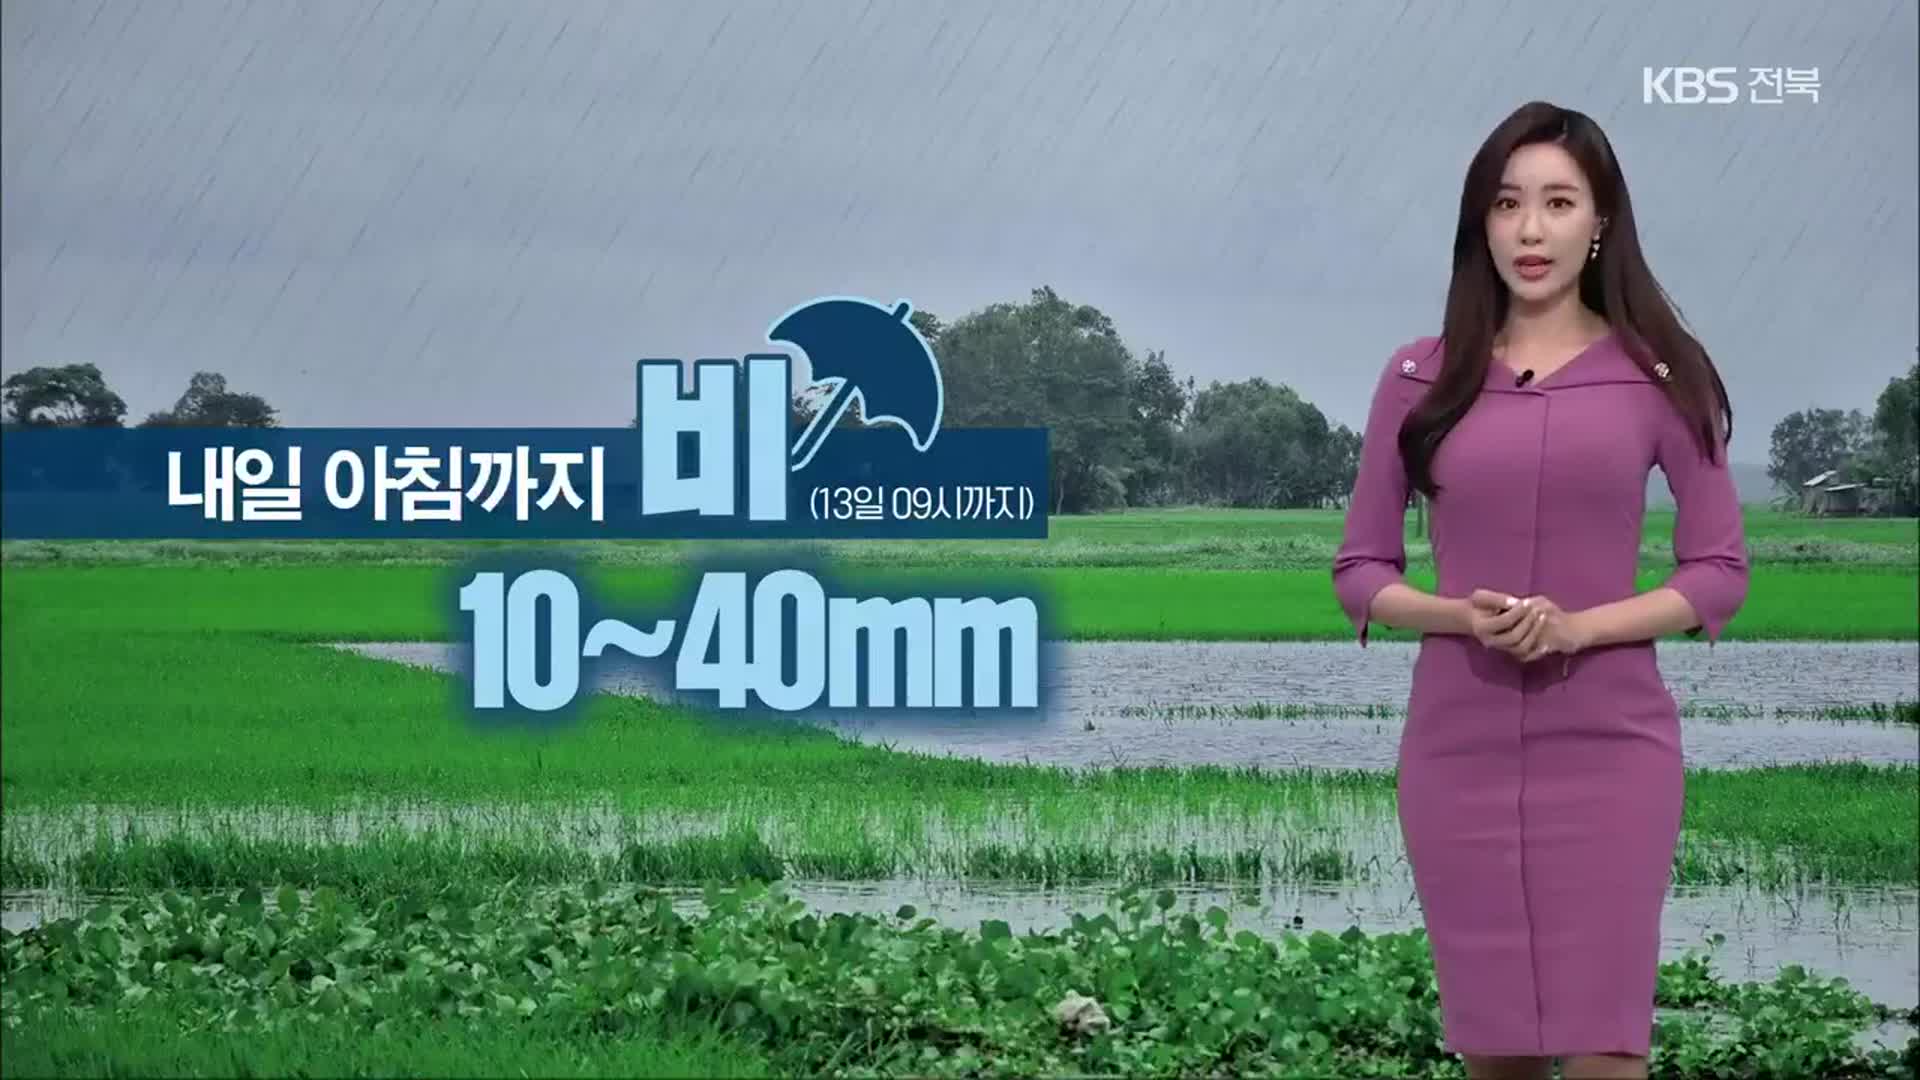 [날씨] 전북 내일 아침까지 최대 40mm 비…강한 바람 주의